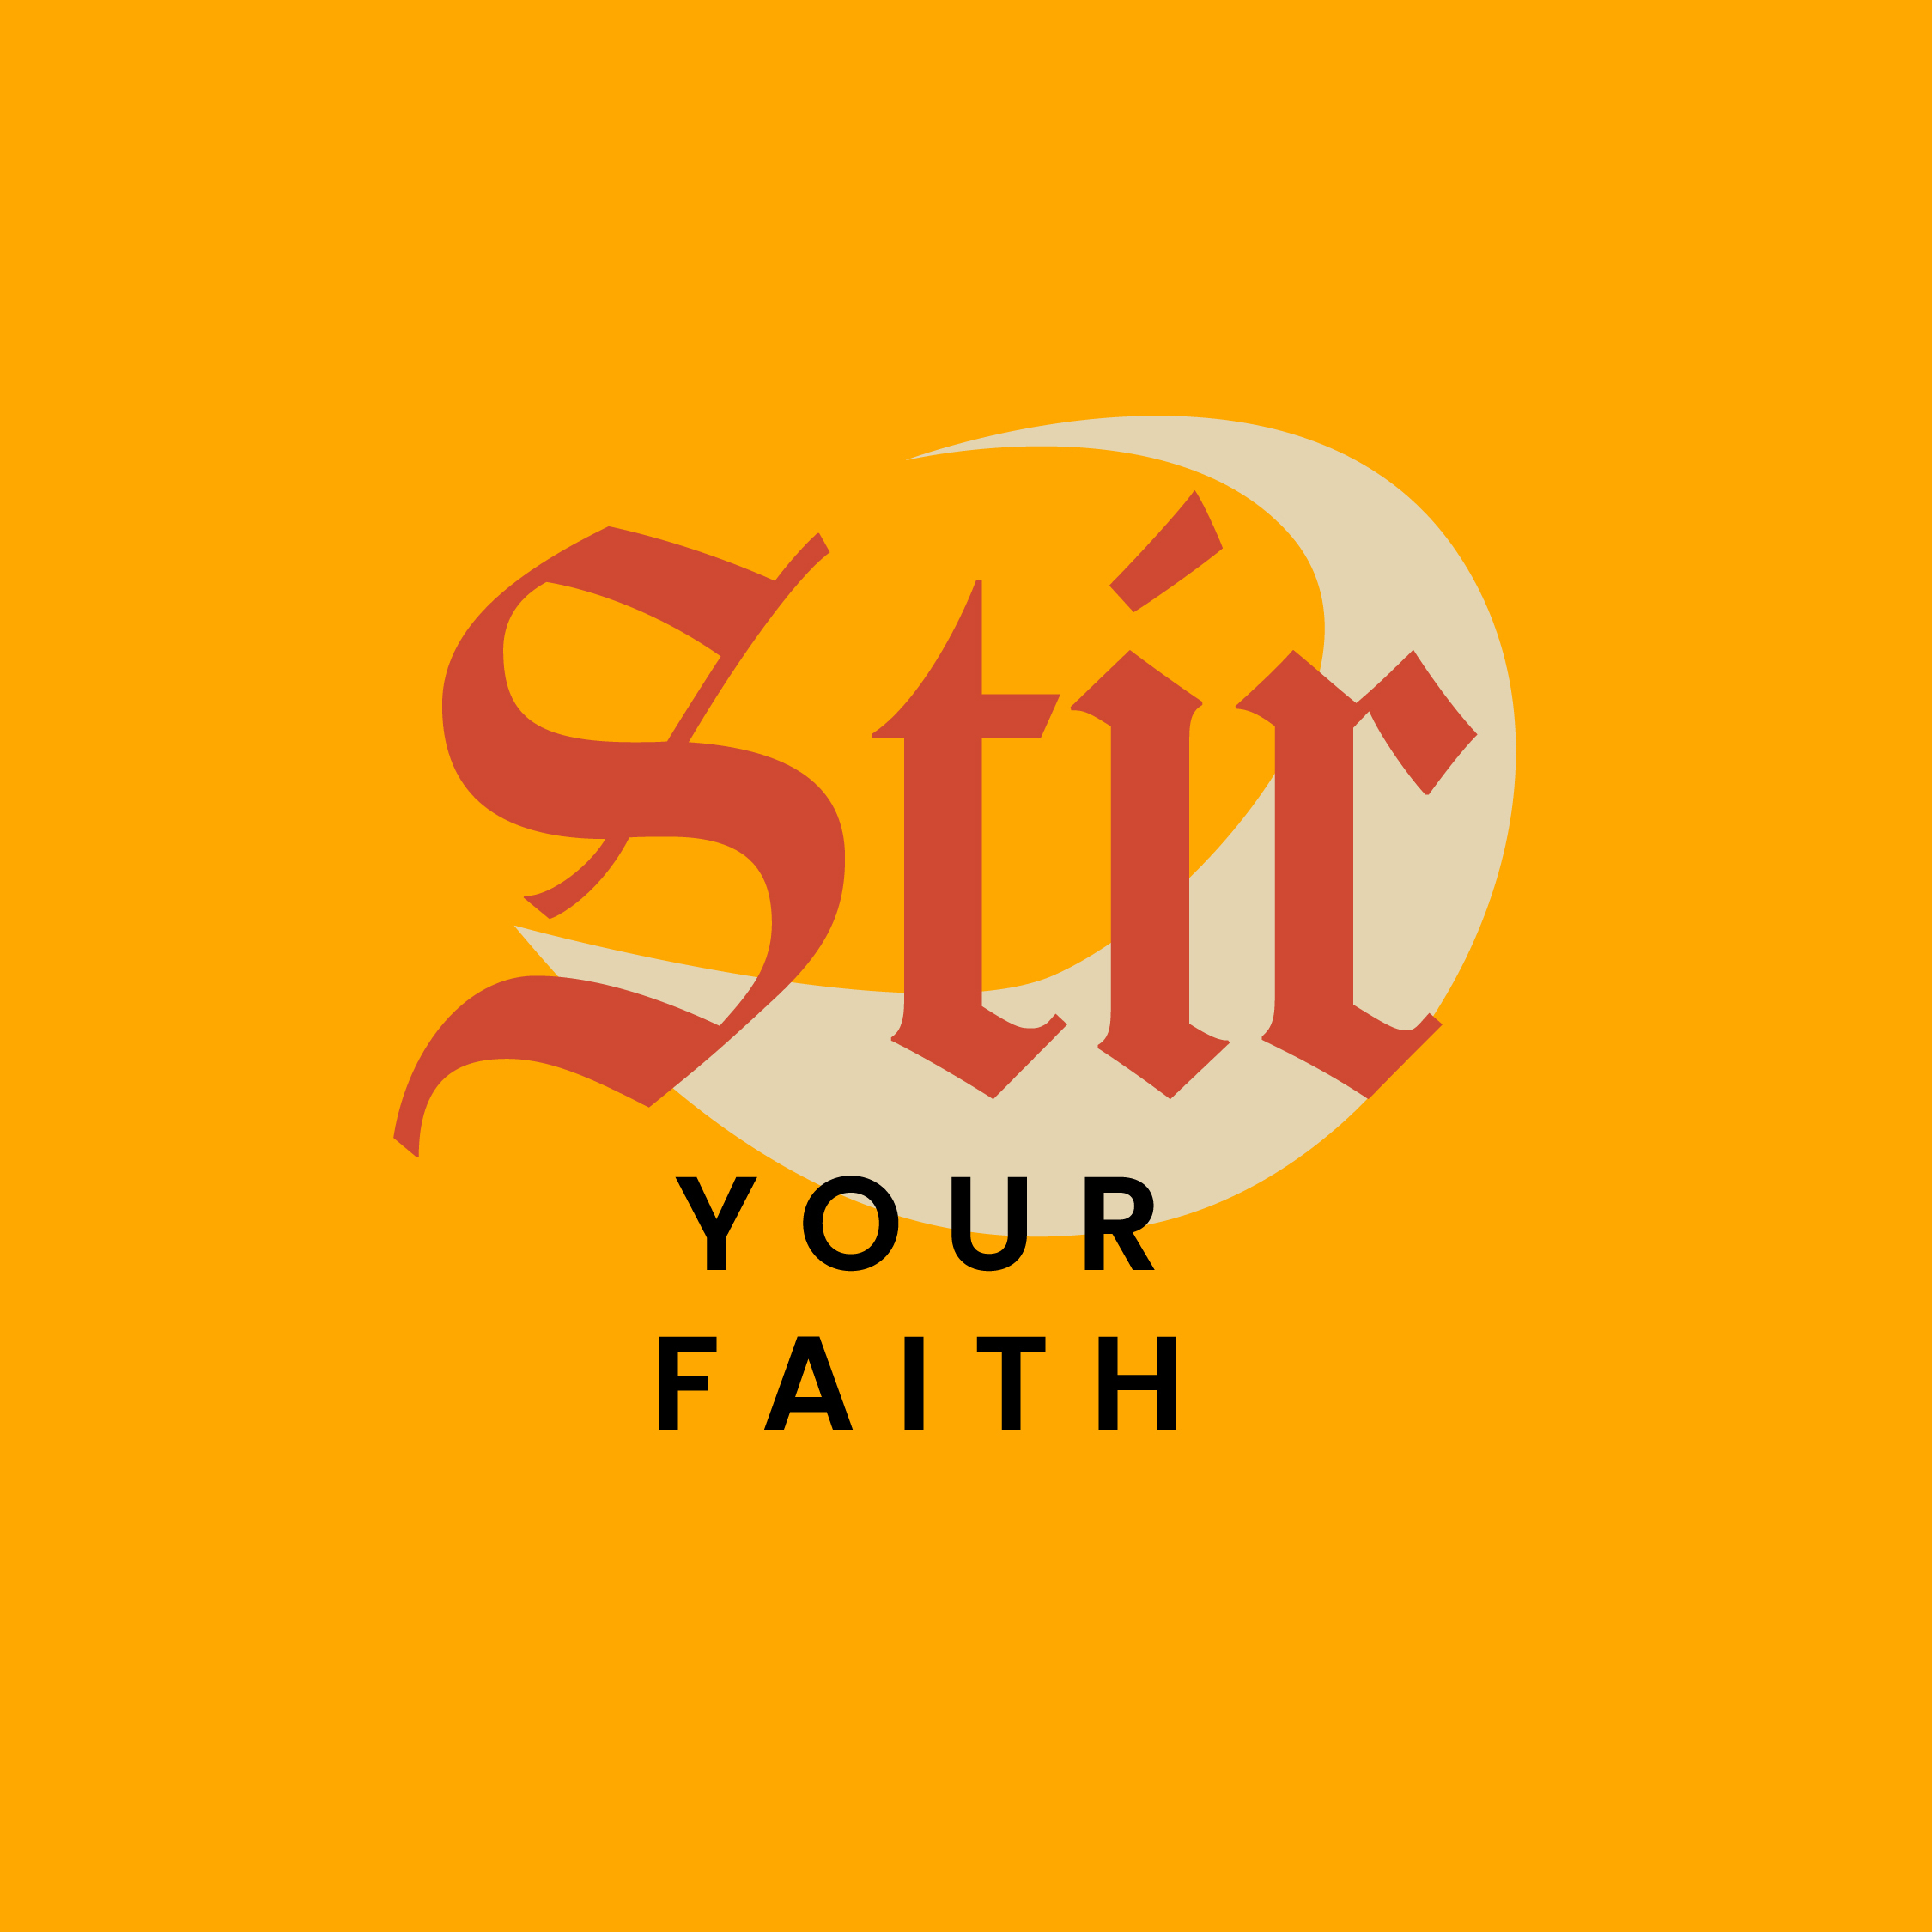 STIR YOUR FAITH